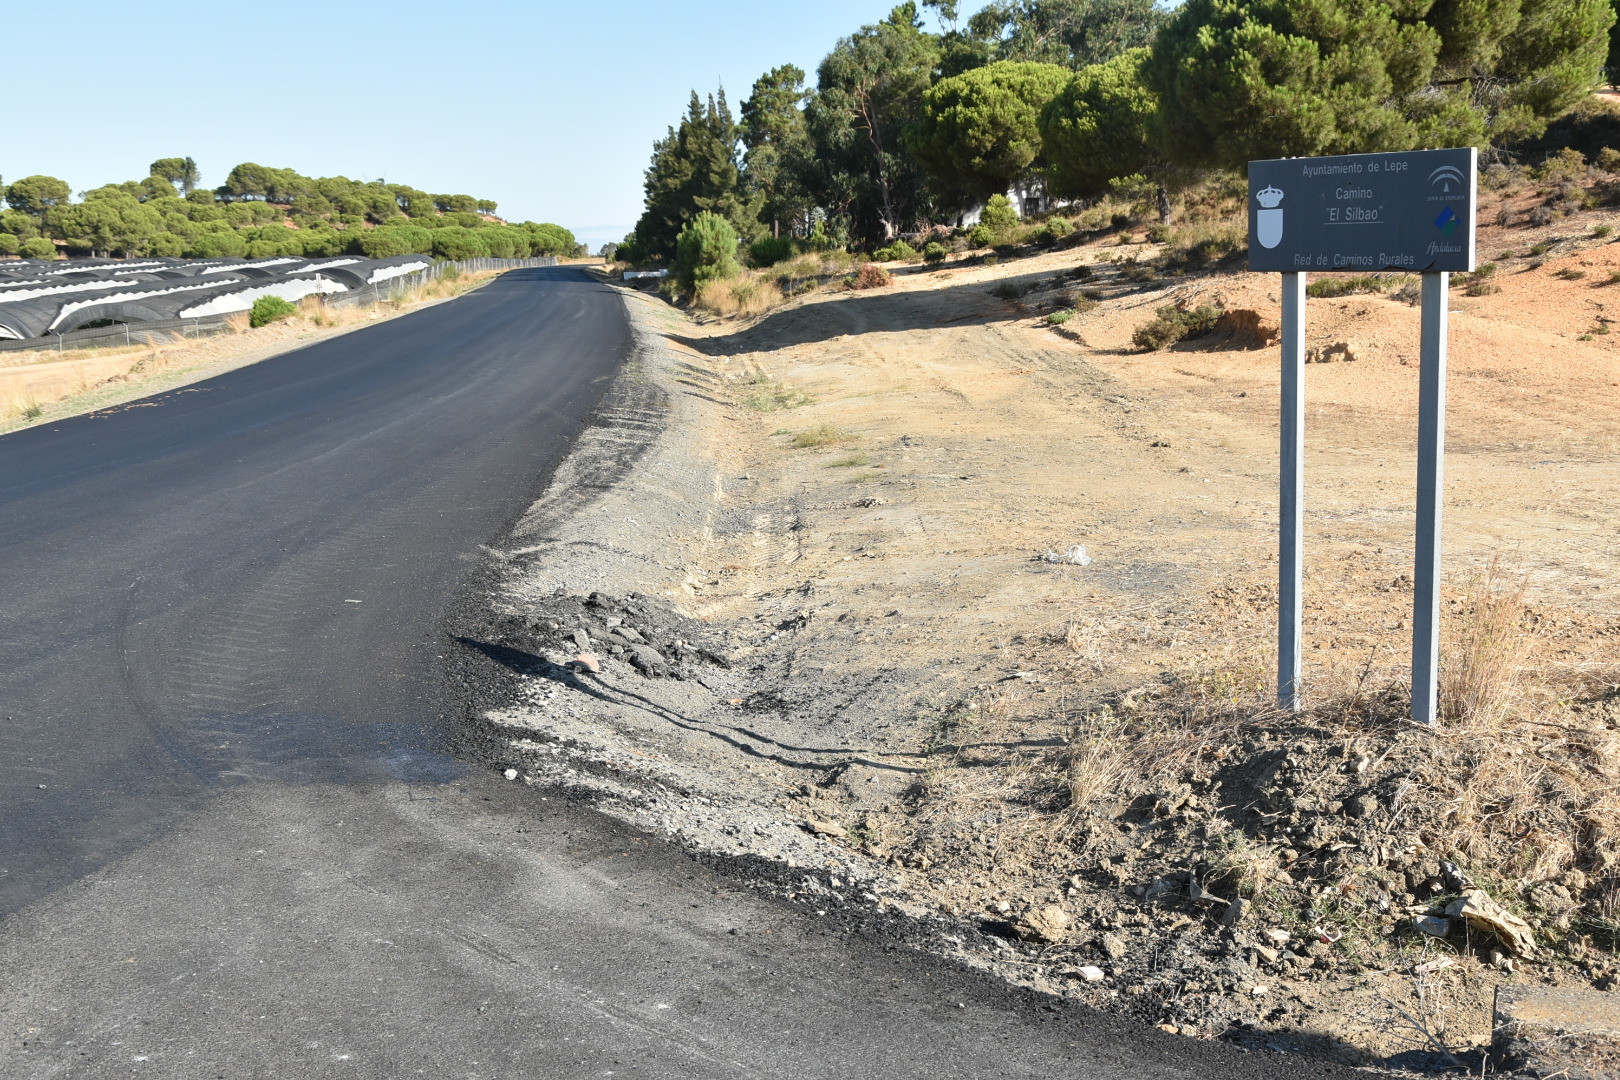 Lepe aborda la solicitud de subvenciones para el arreglo de caminos rurales